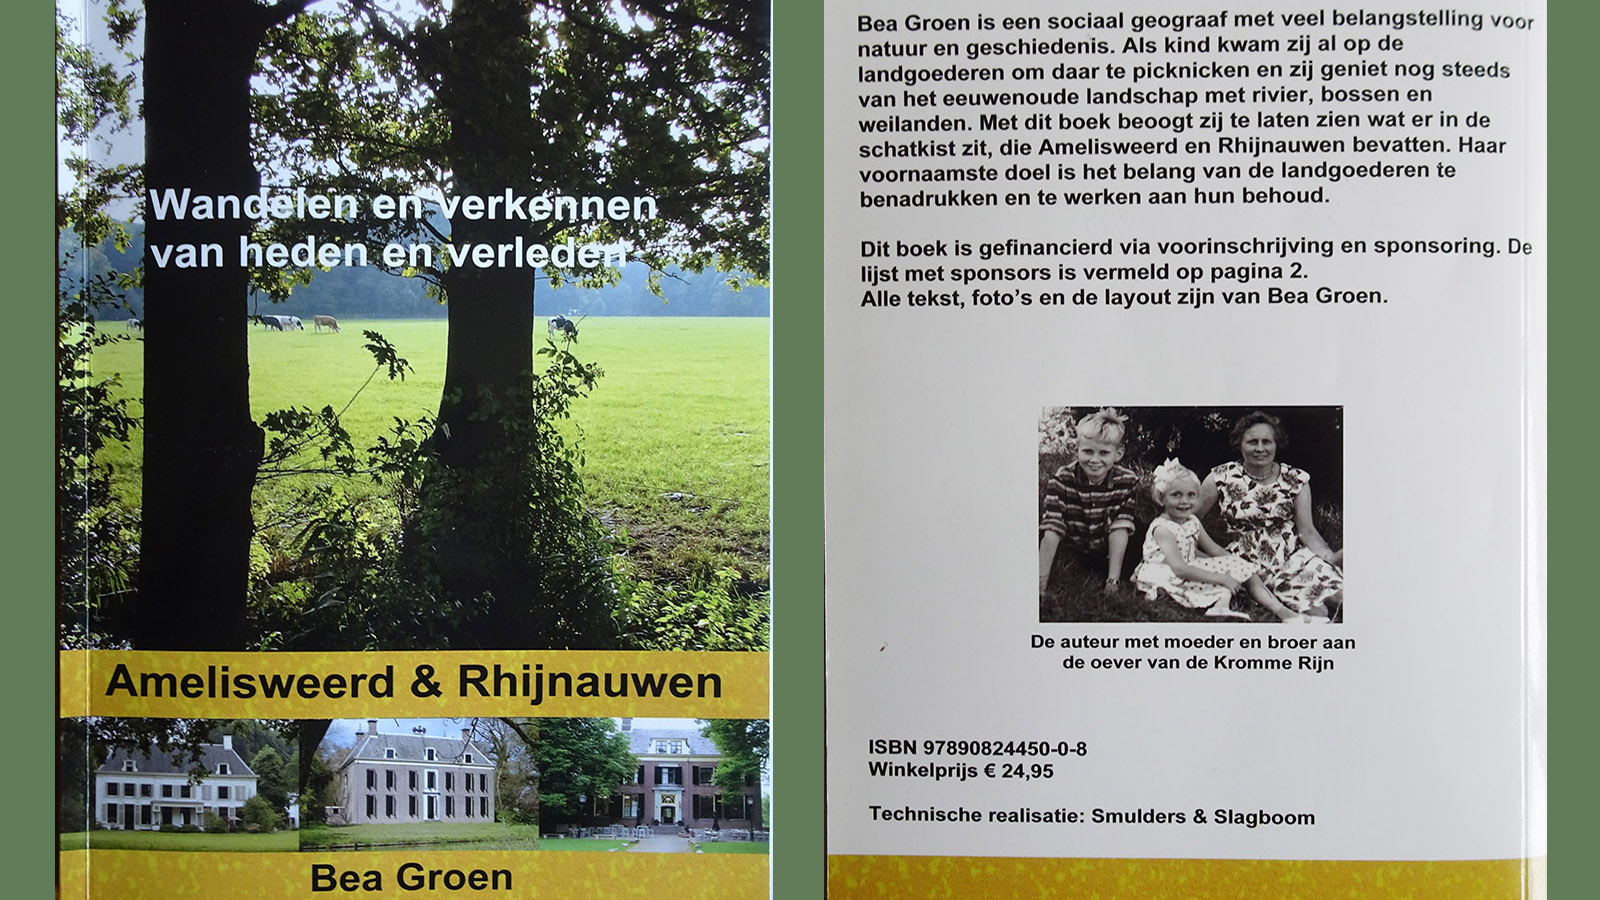 Boek van Bea Groen - Amelisweerd & Rhijnauwen